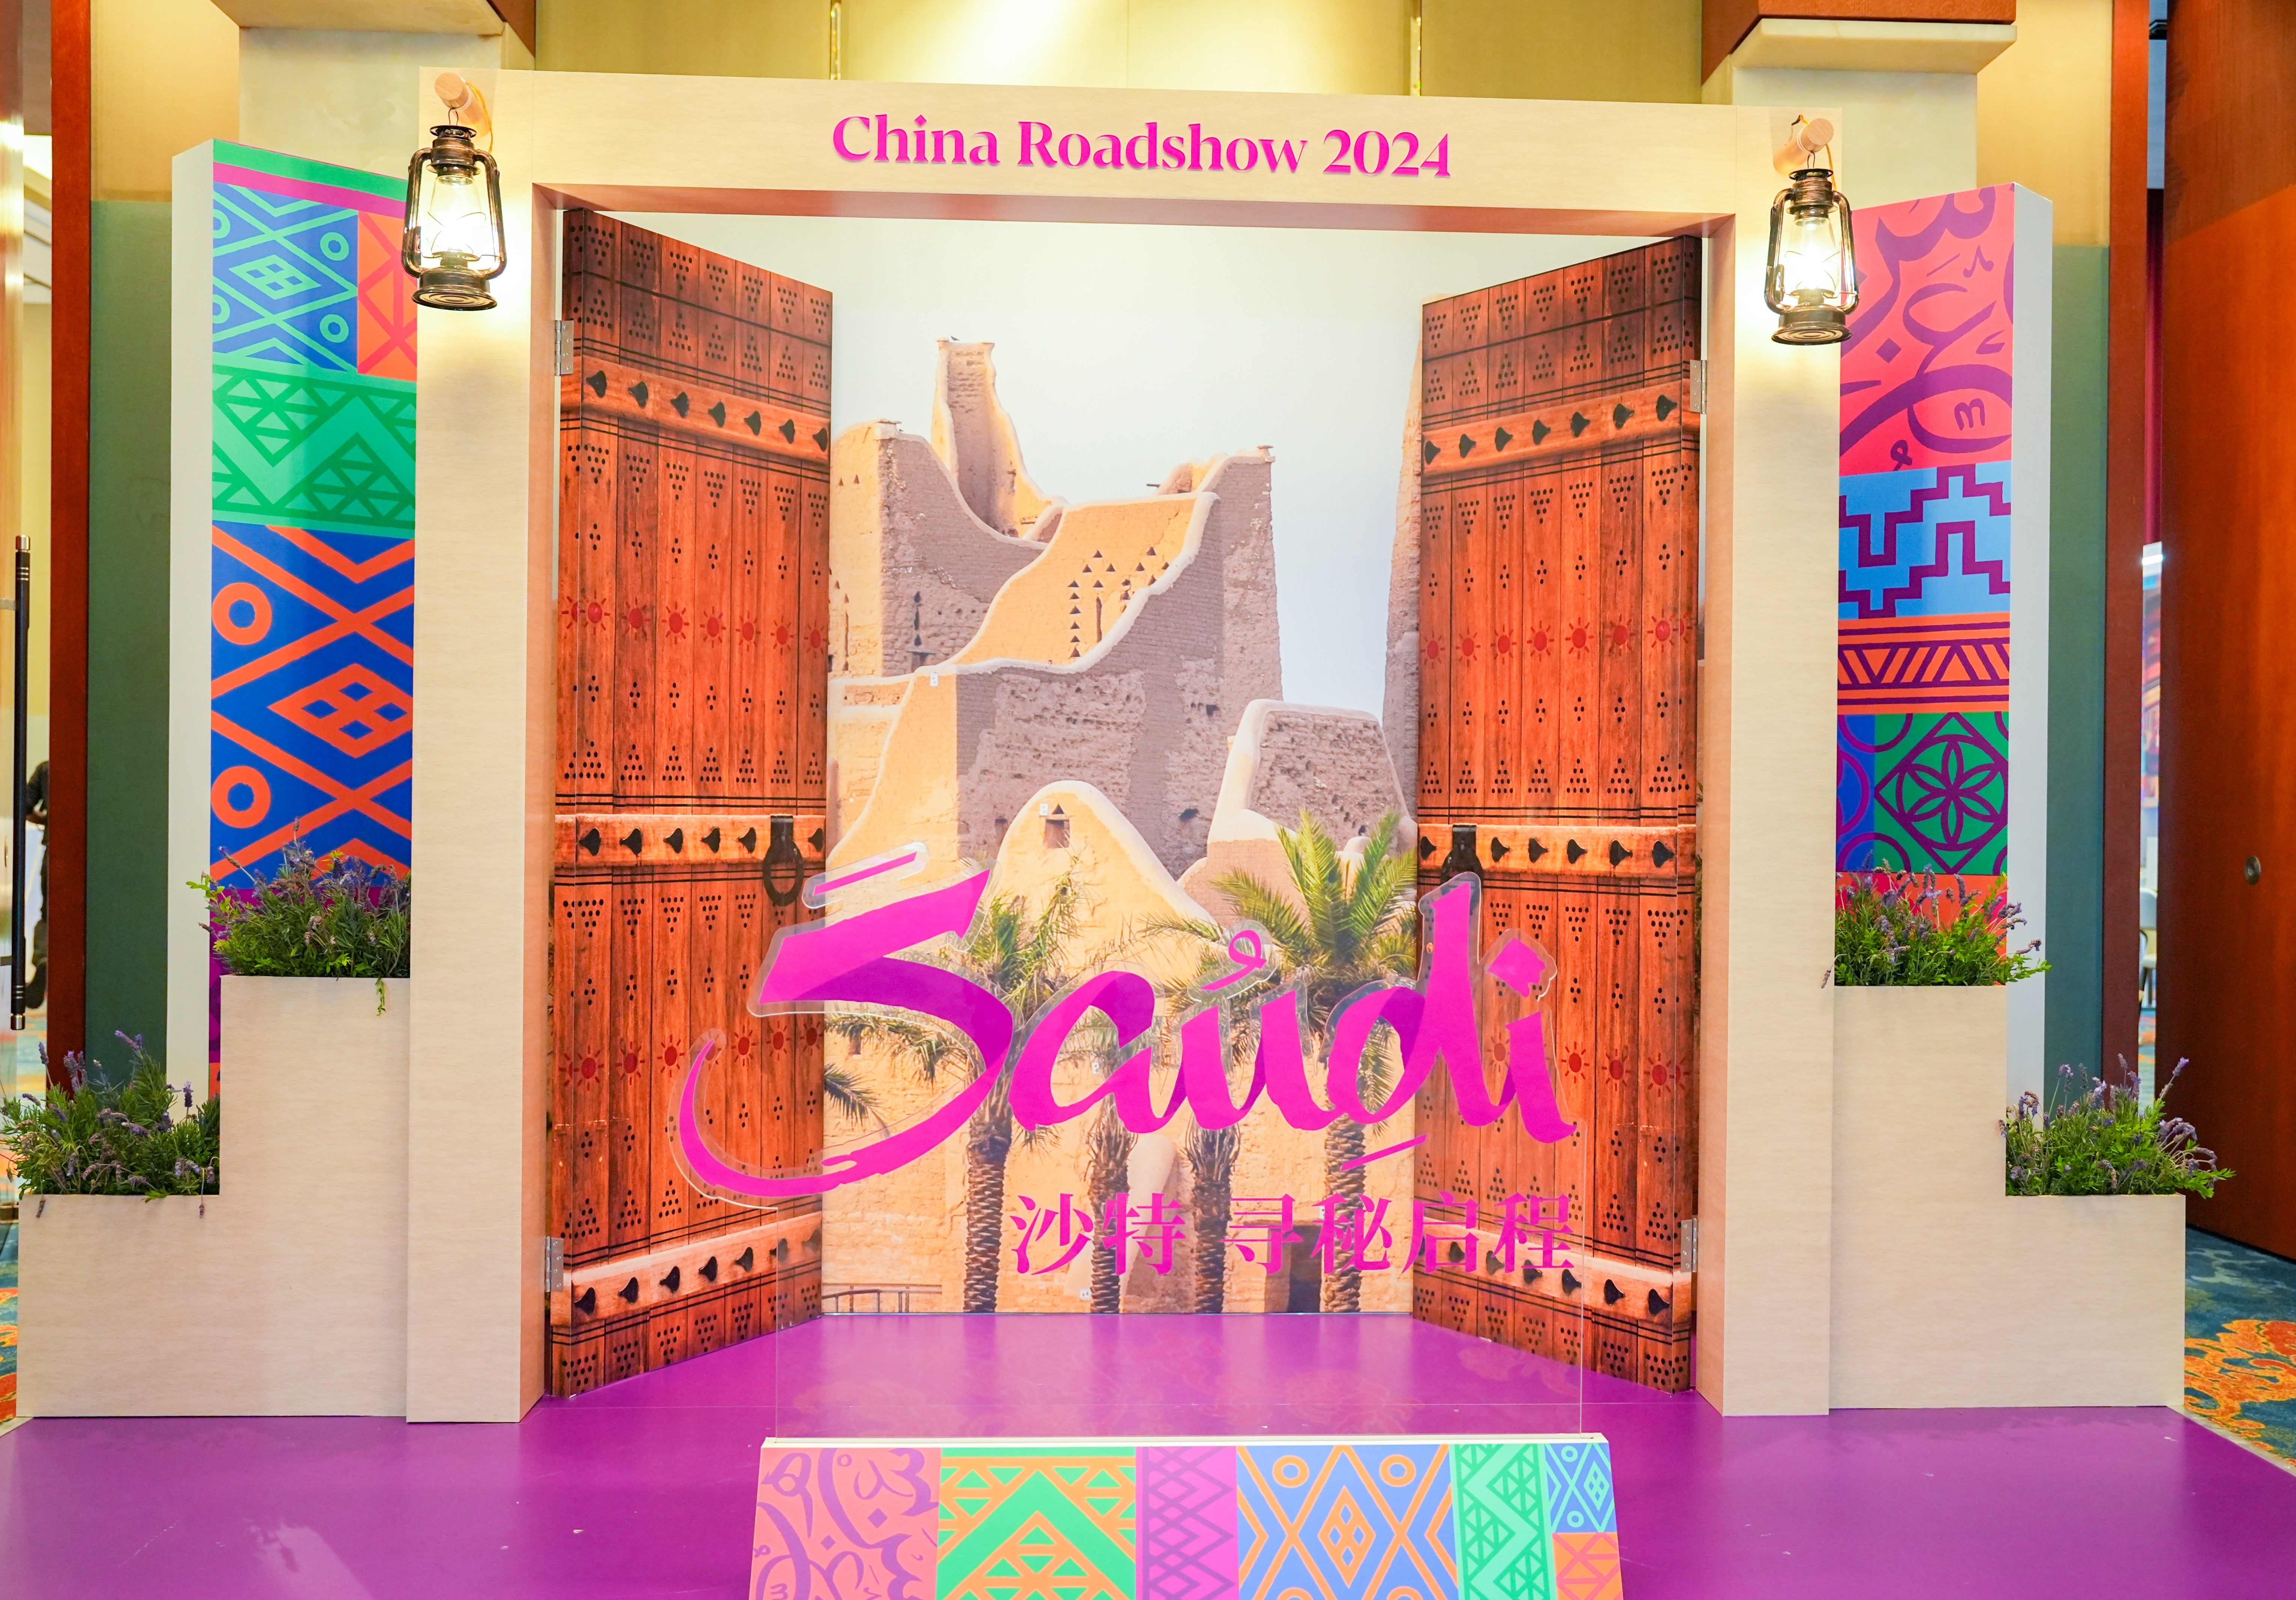 沙特旅游局在深圳举办路演掀旅游热潮 新航线和签证优惠齐发力